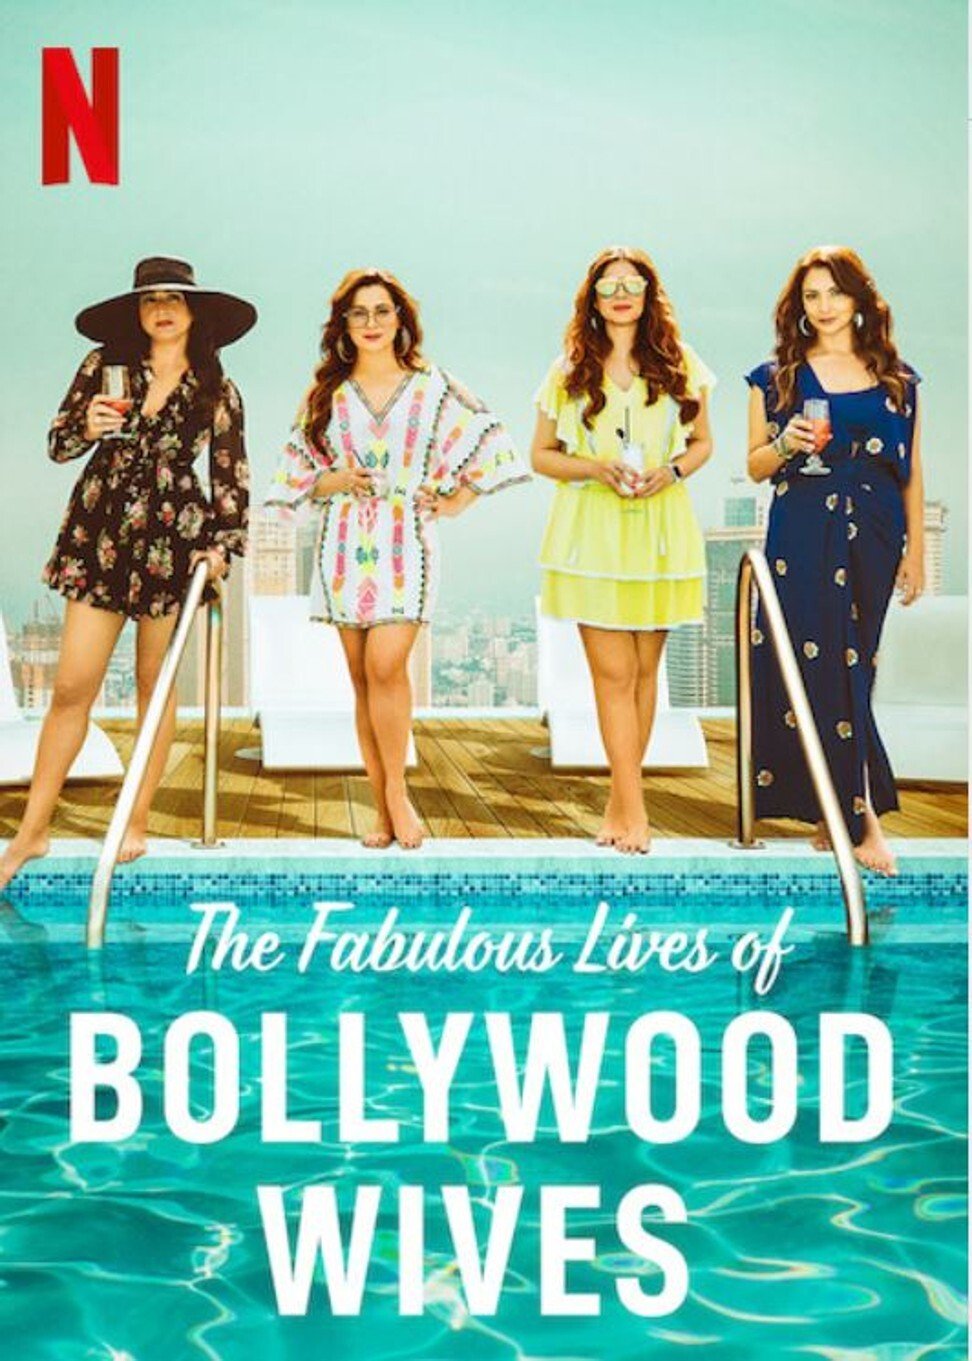 ดูหนังออนไลน์ฟรี Fabulous Lives of Bollywood Wives Season 1 Ep01 แฟบูลูส ไลฟ์ ออฟ บอลลีวู๊ด ไวส์ท ปี1 ตอนที่1